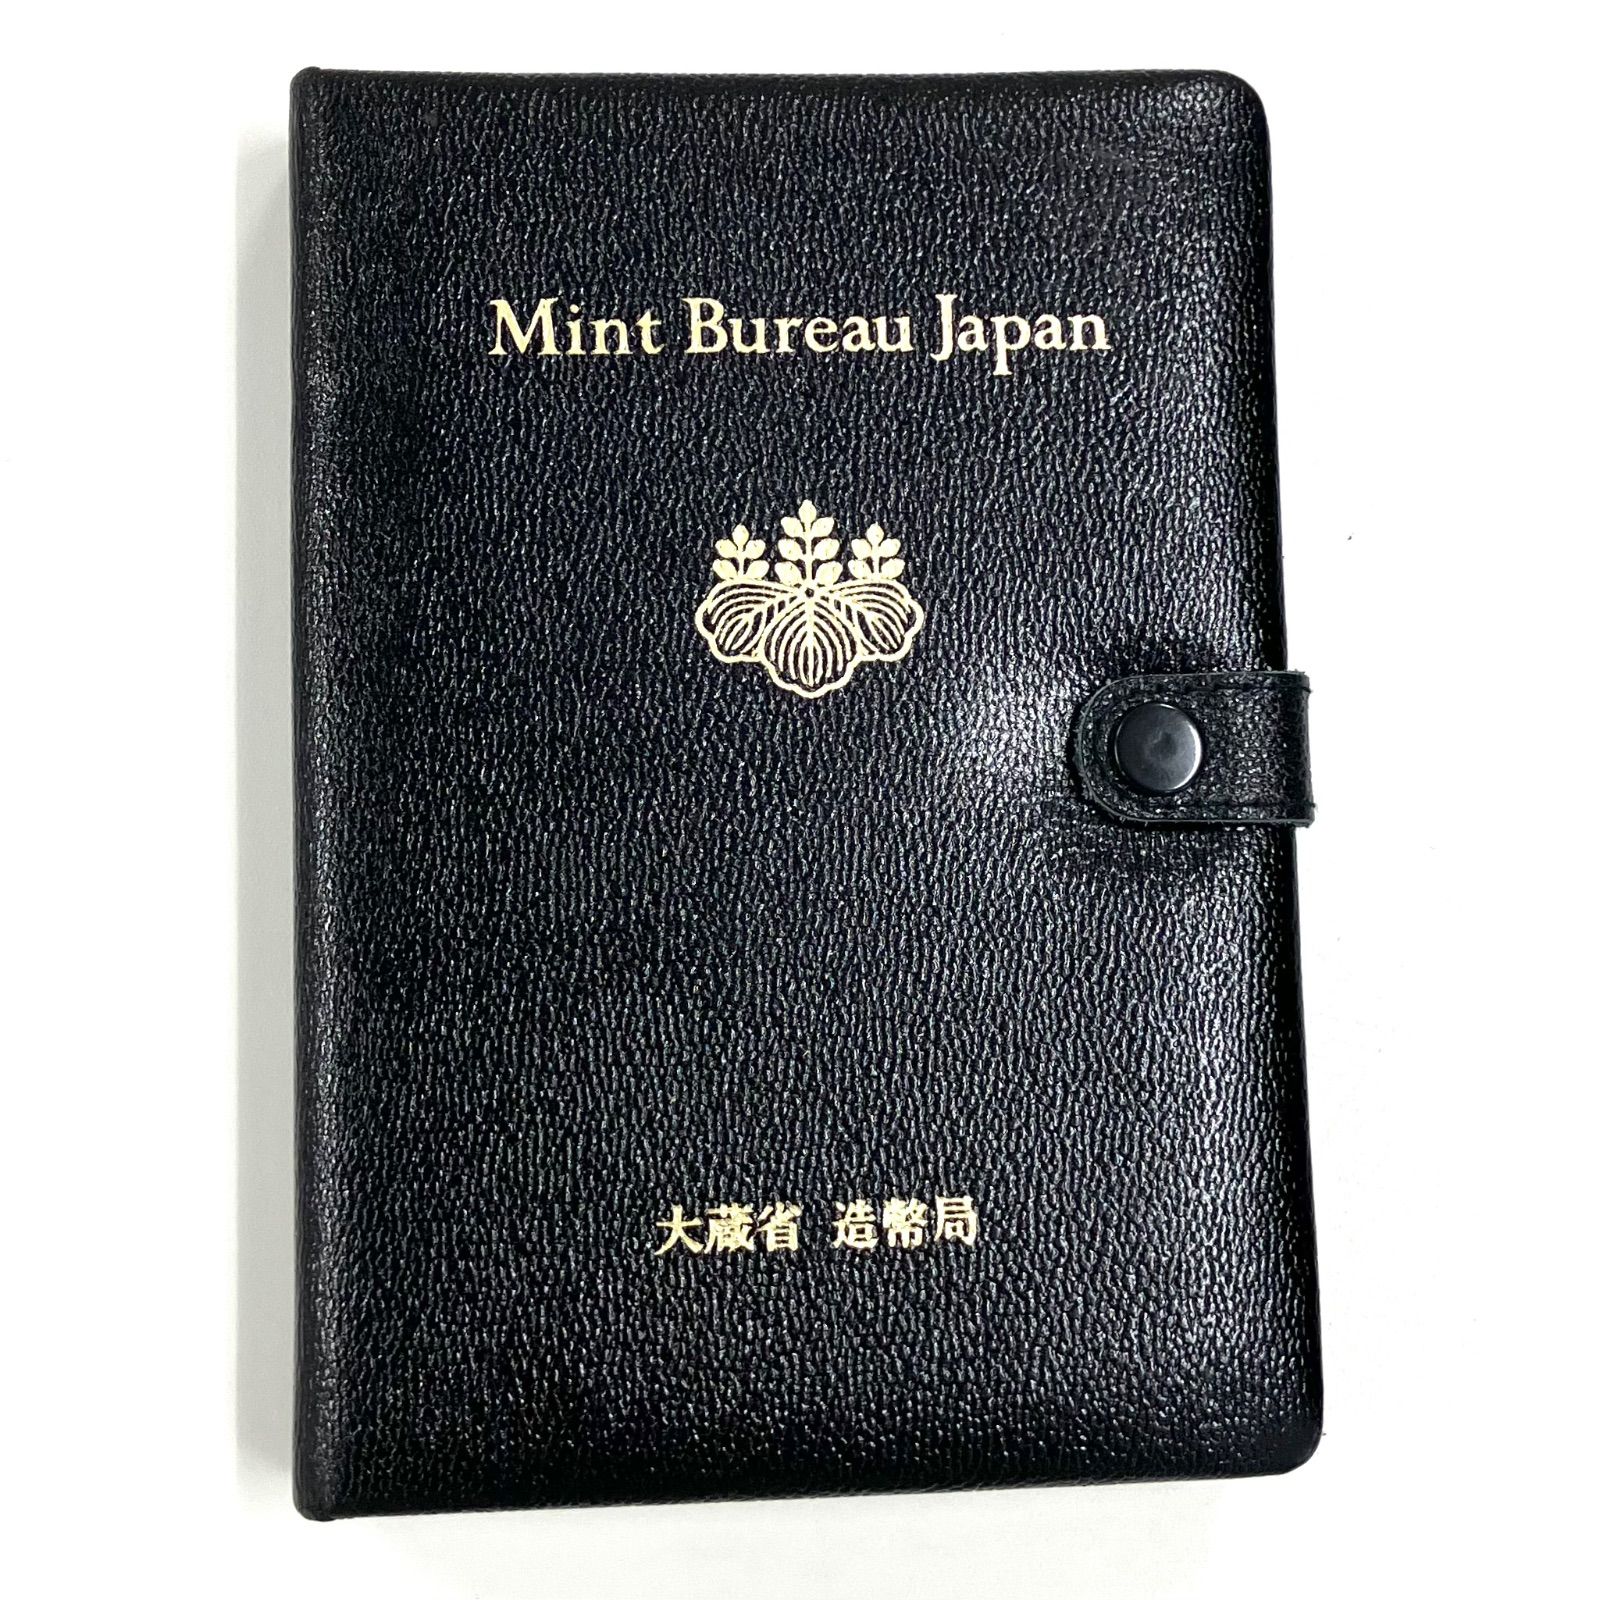 104467】 ミントセット Mint Bureau Japan 大蔵省 造幣局 1990 美品 